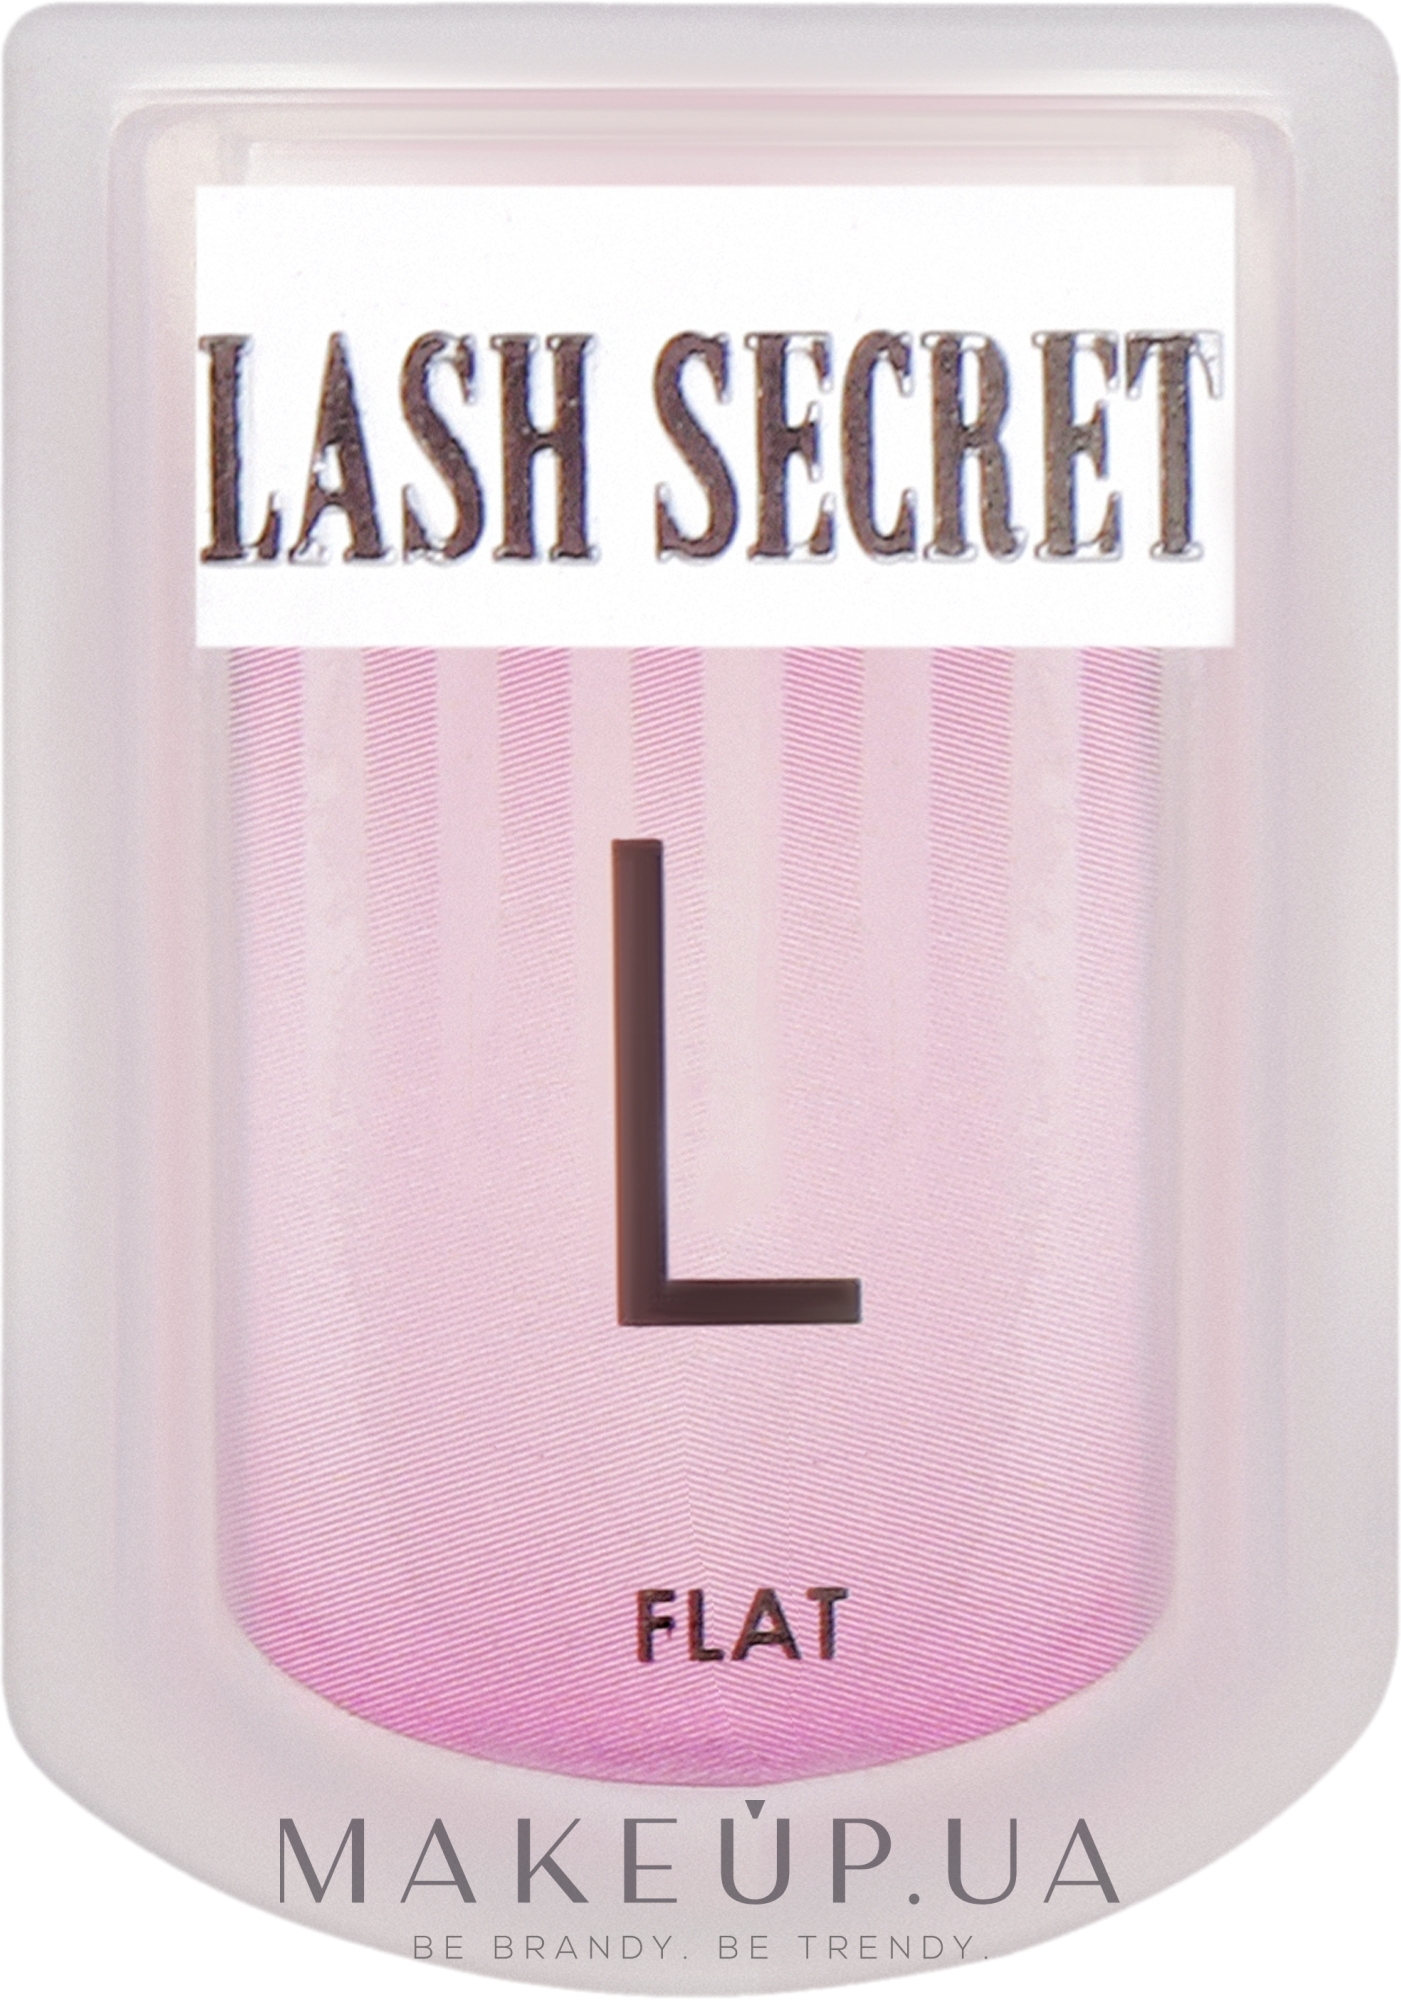 Бигуди для ламинирования ресниц с насечками, размер L (flat) - Lash Secret — фото 2шт